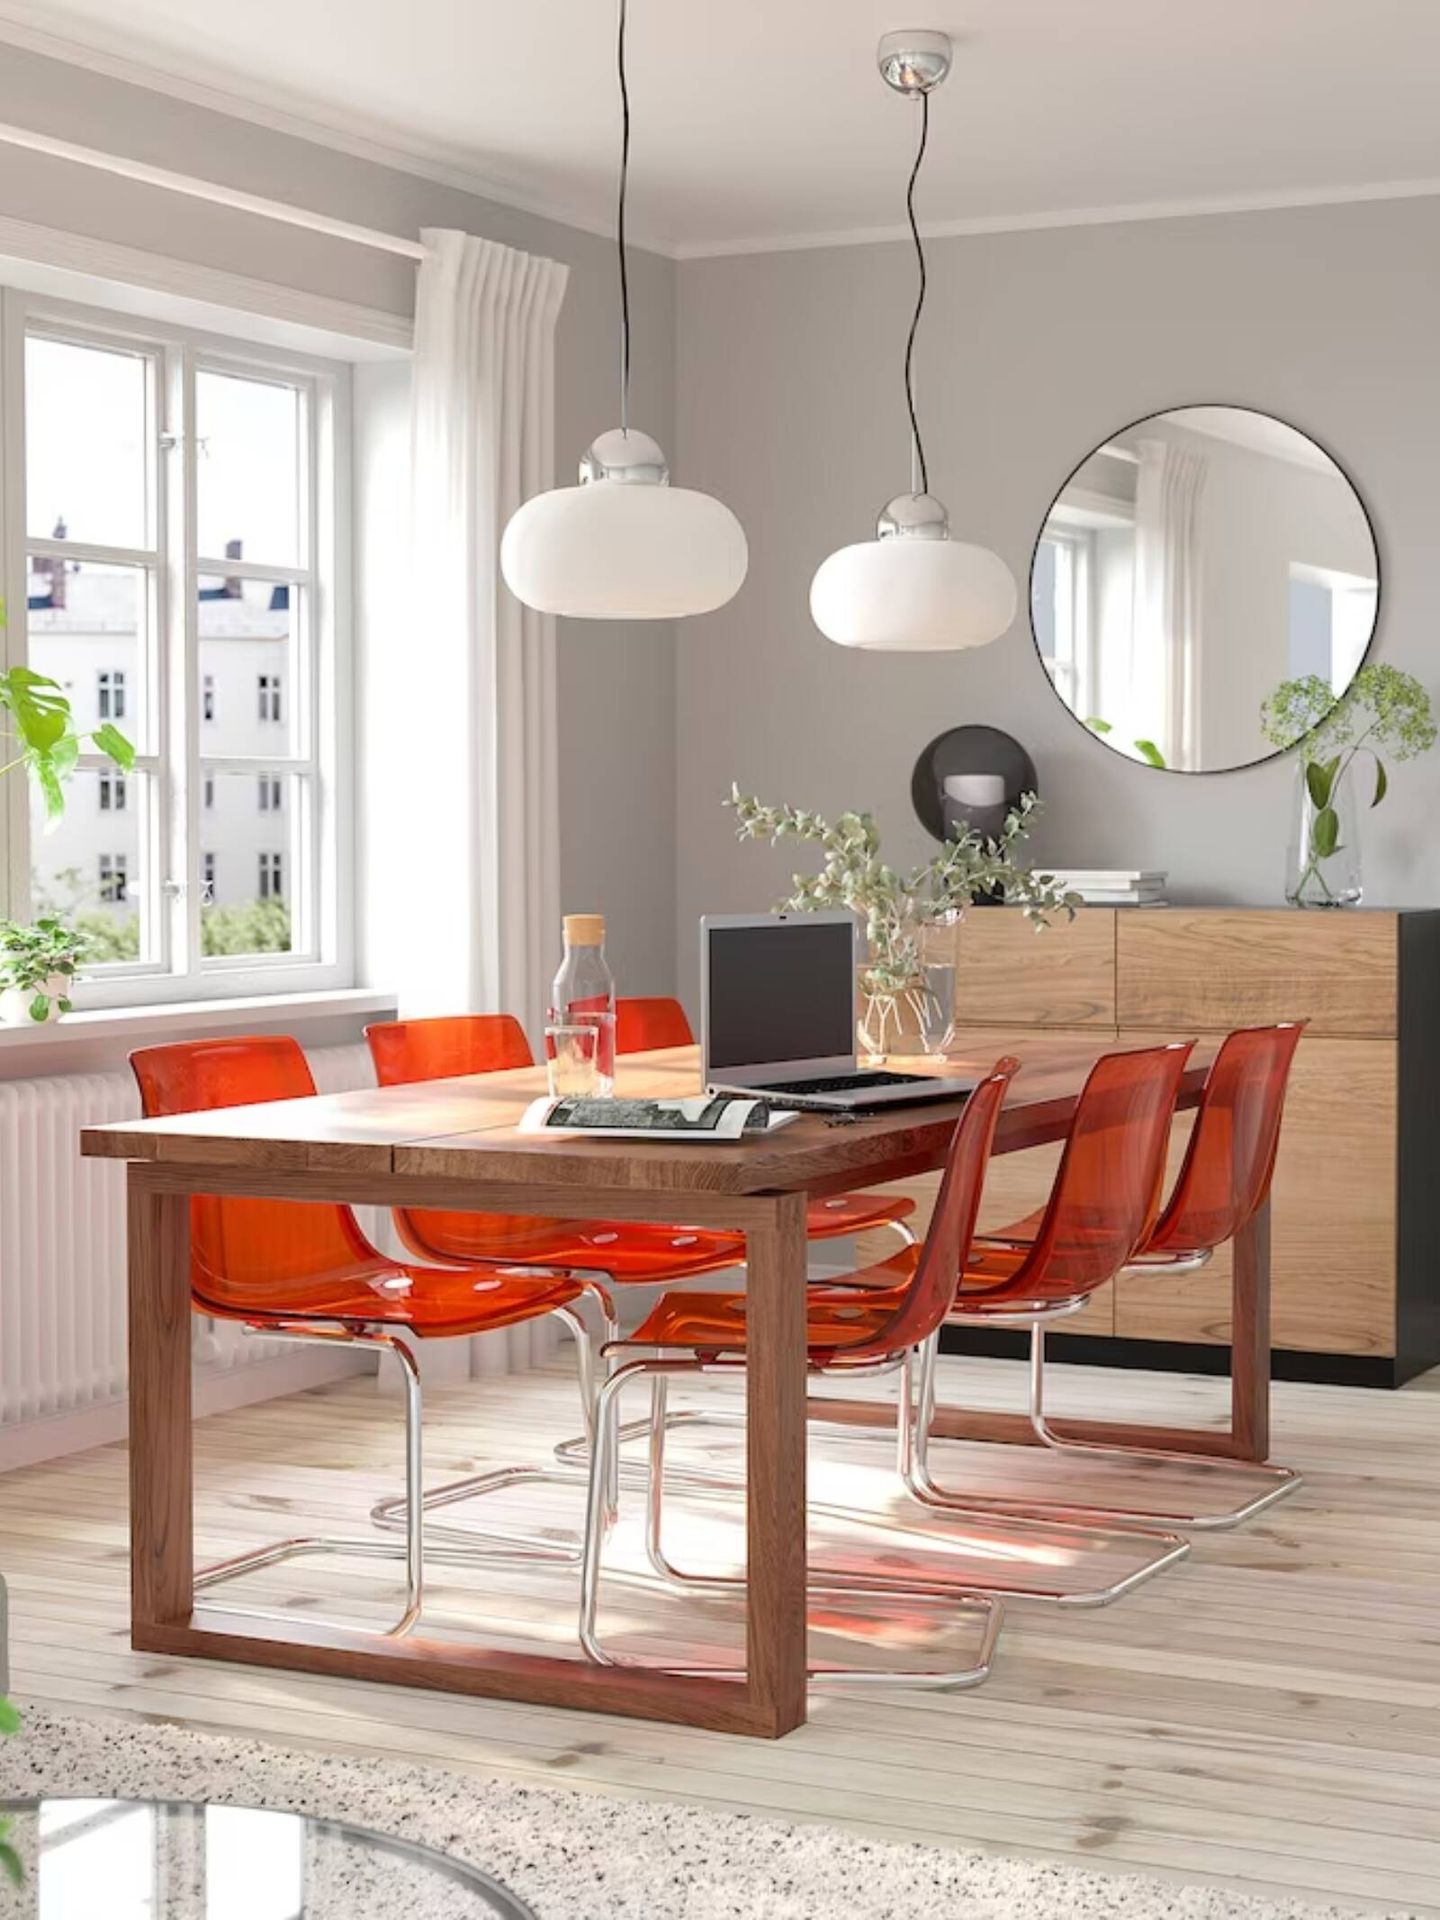 Esta silla llena de energía y vitalidad tu casa. (Cortesía/Ikea)